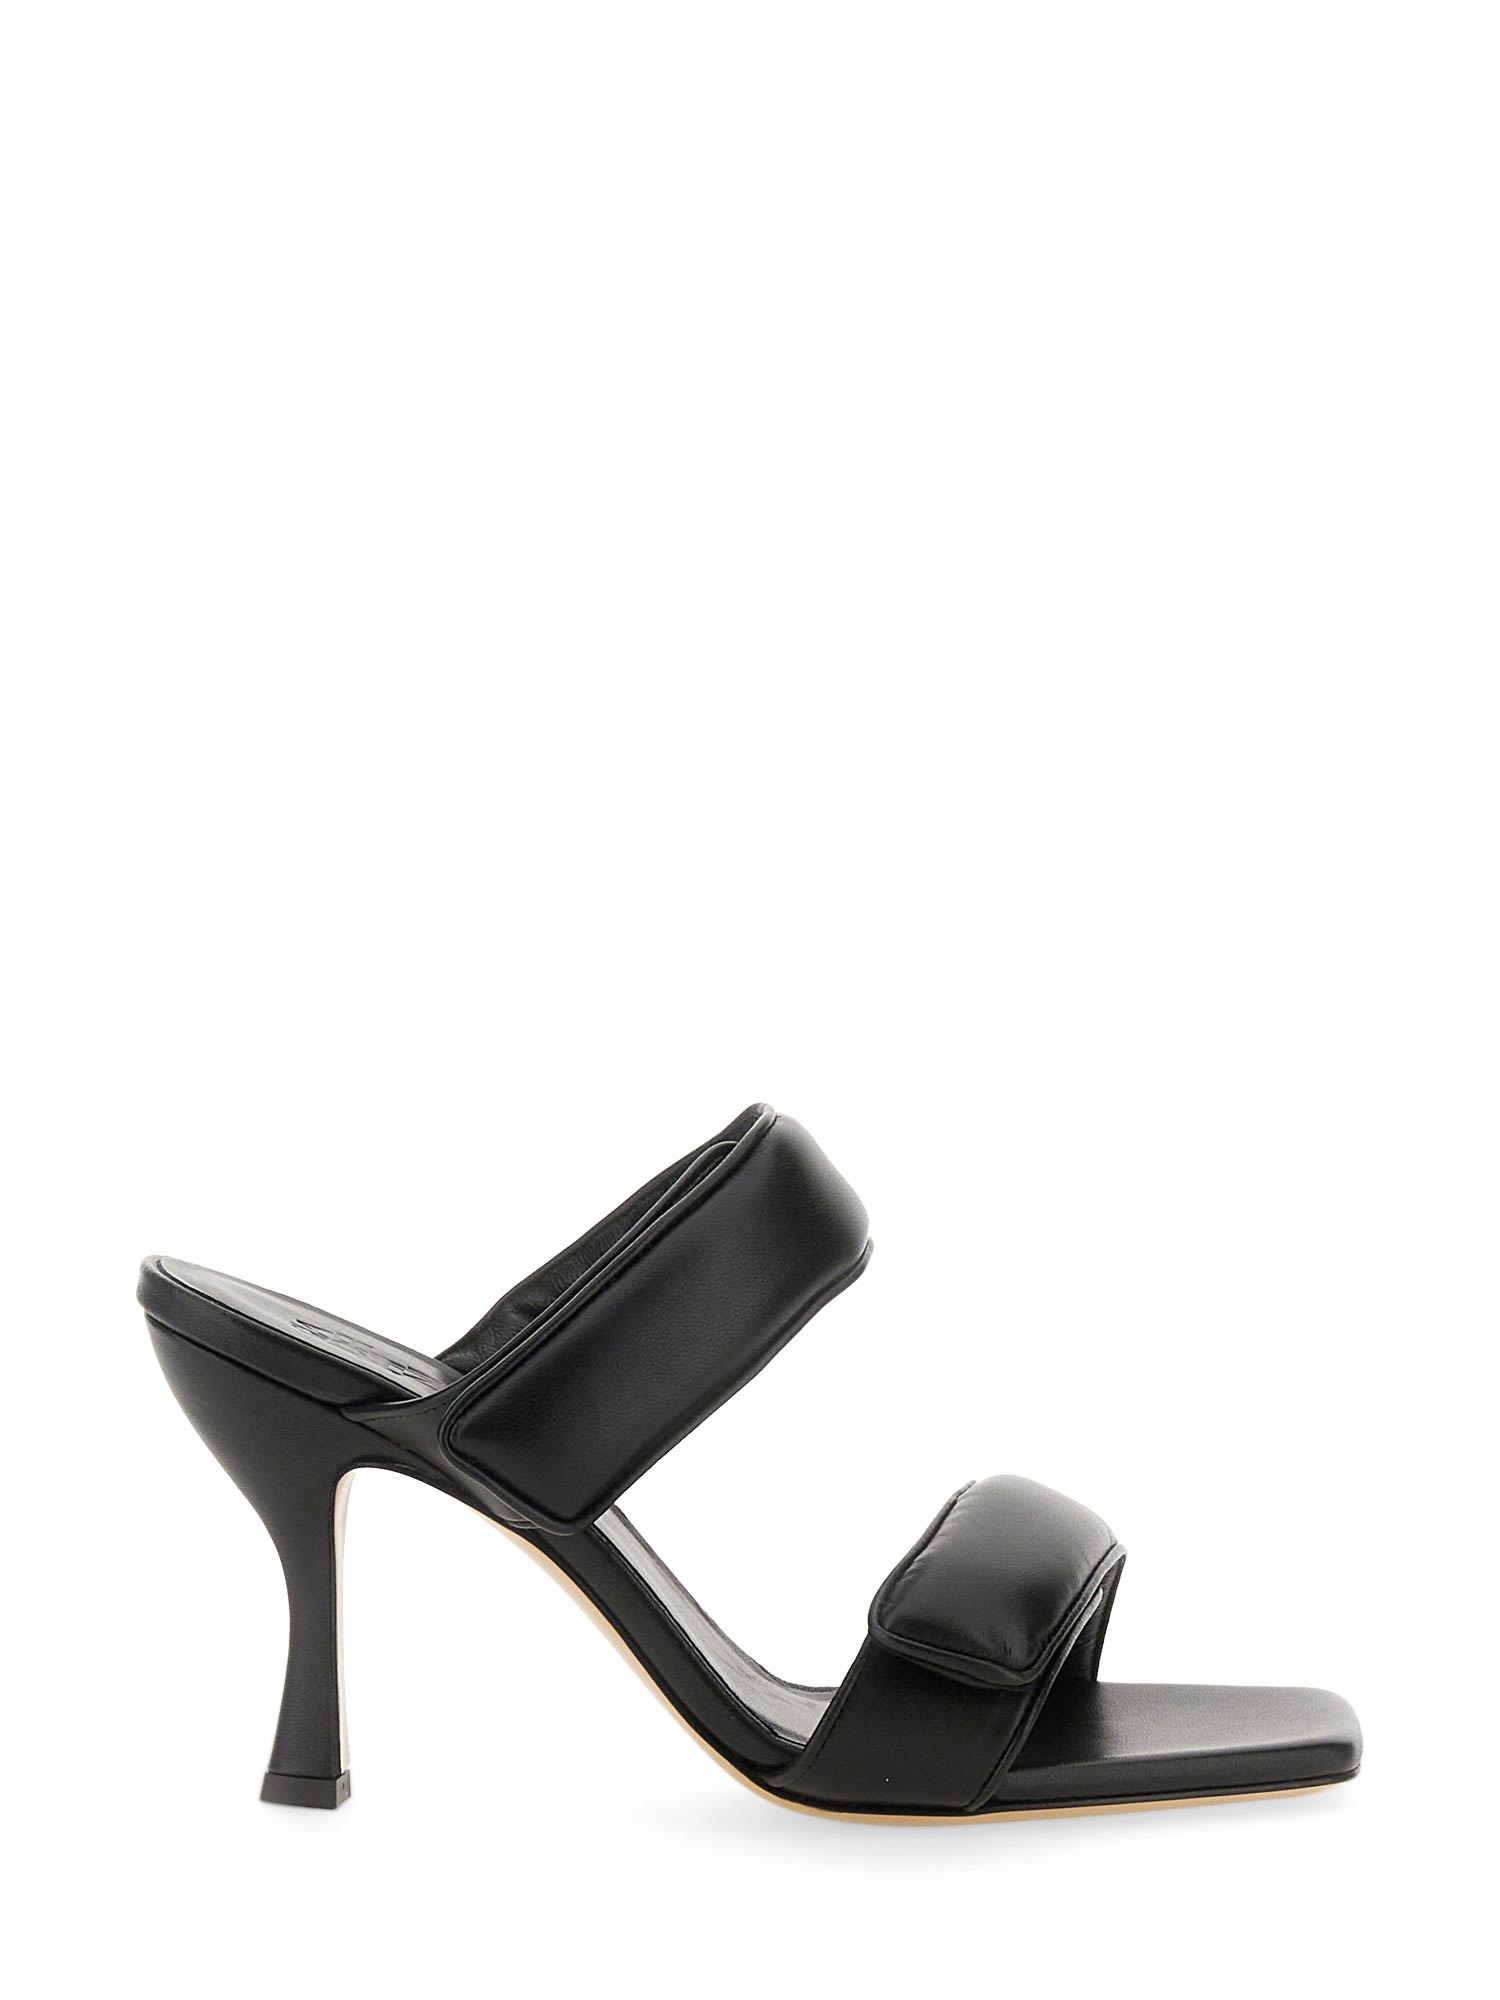 Gia Borghini Perni Sandal 03 Gia X Pernille Teisbaek In Black | ModeSens